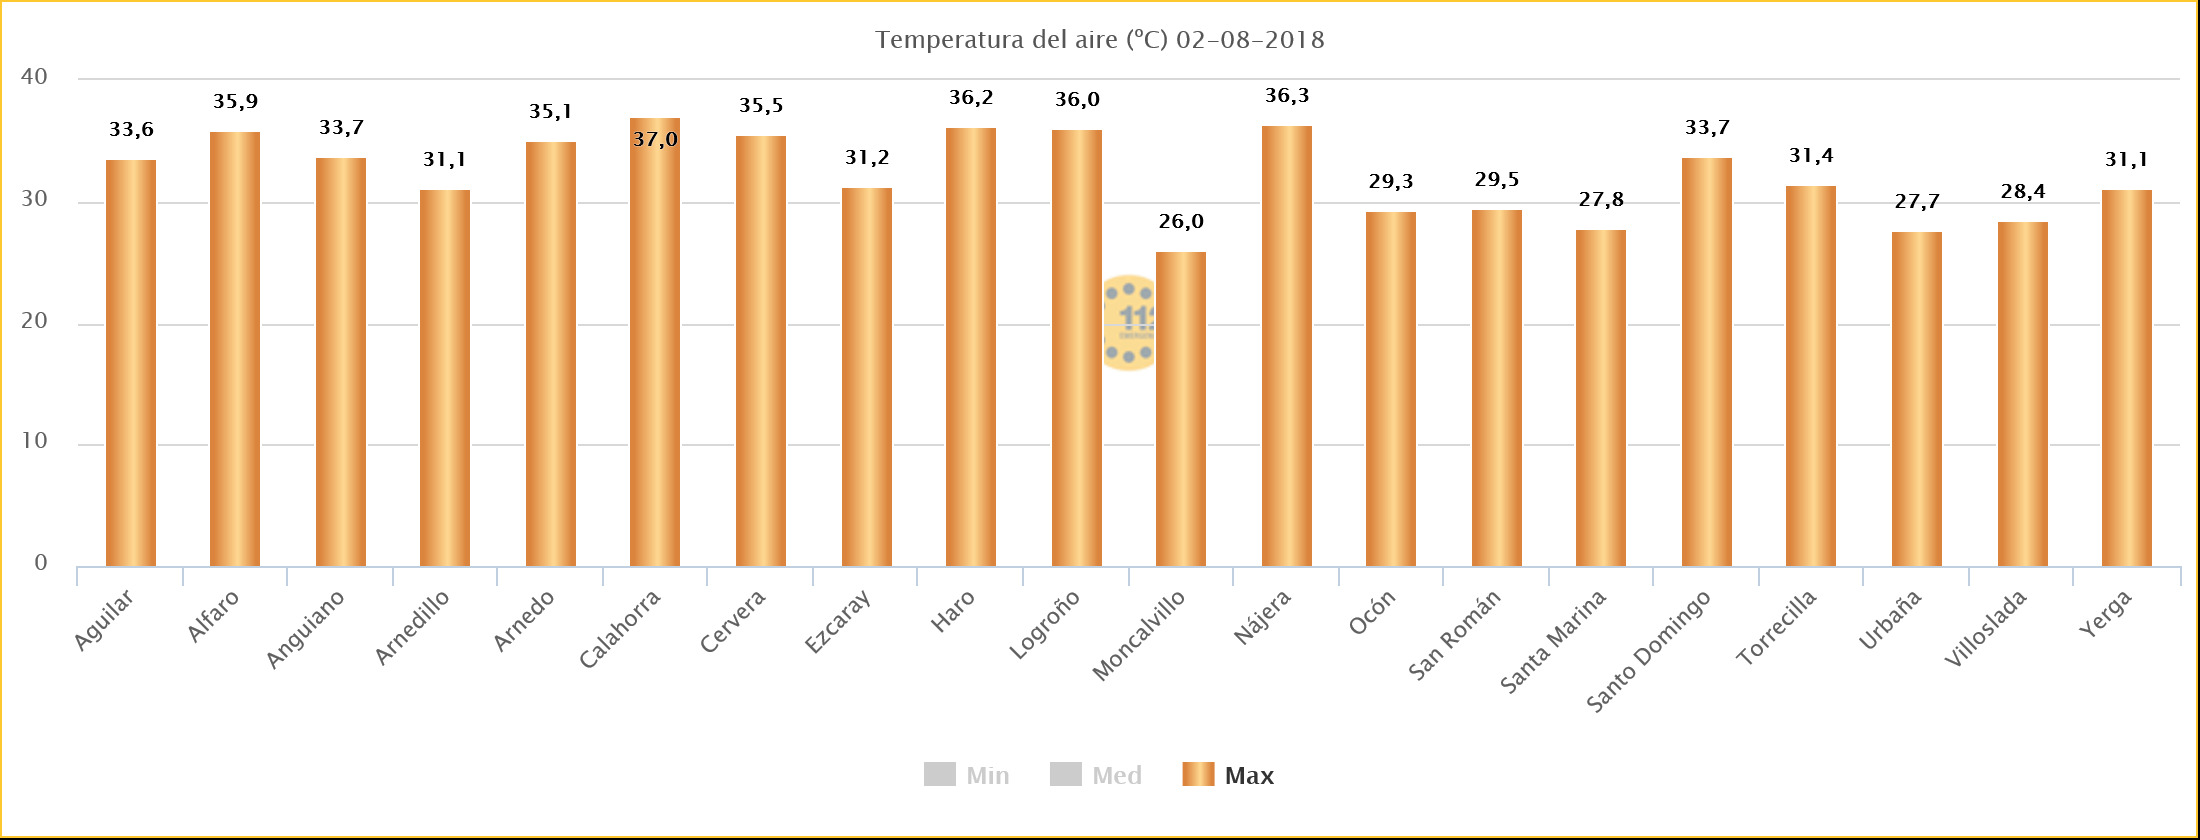 Grafico temperaturas máximas Estaciones SOS Rioja. Meteosojuela